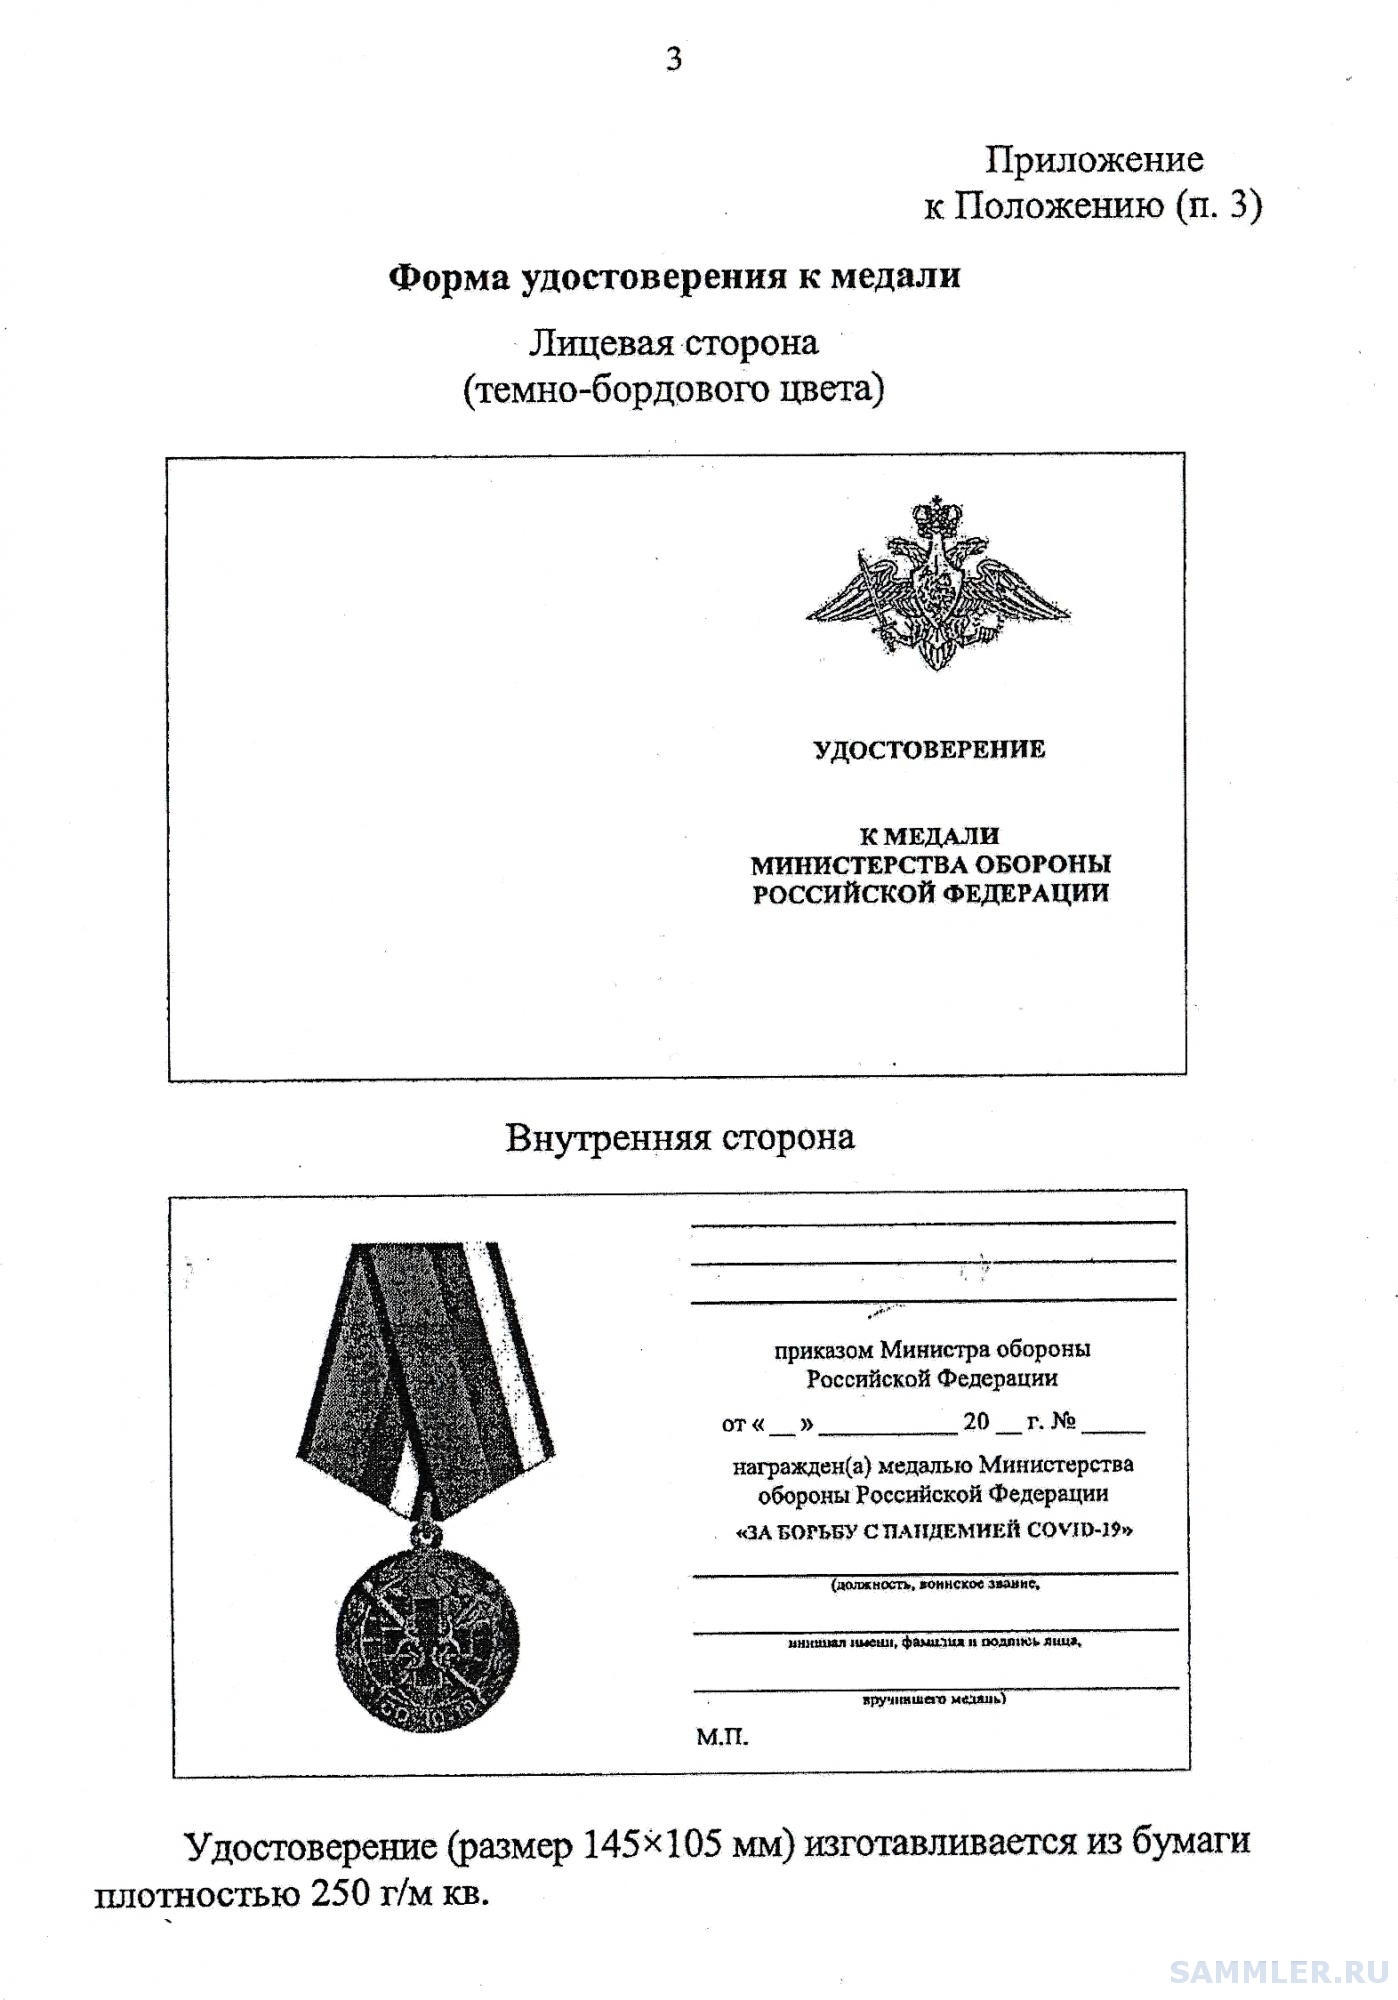 Медали Министерства обороны Российской Федерации по старшинству. Медаль Министерства обороны с крестом за что. Медаль в.в Бахирева Минпромторга.